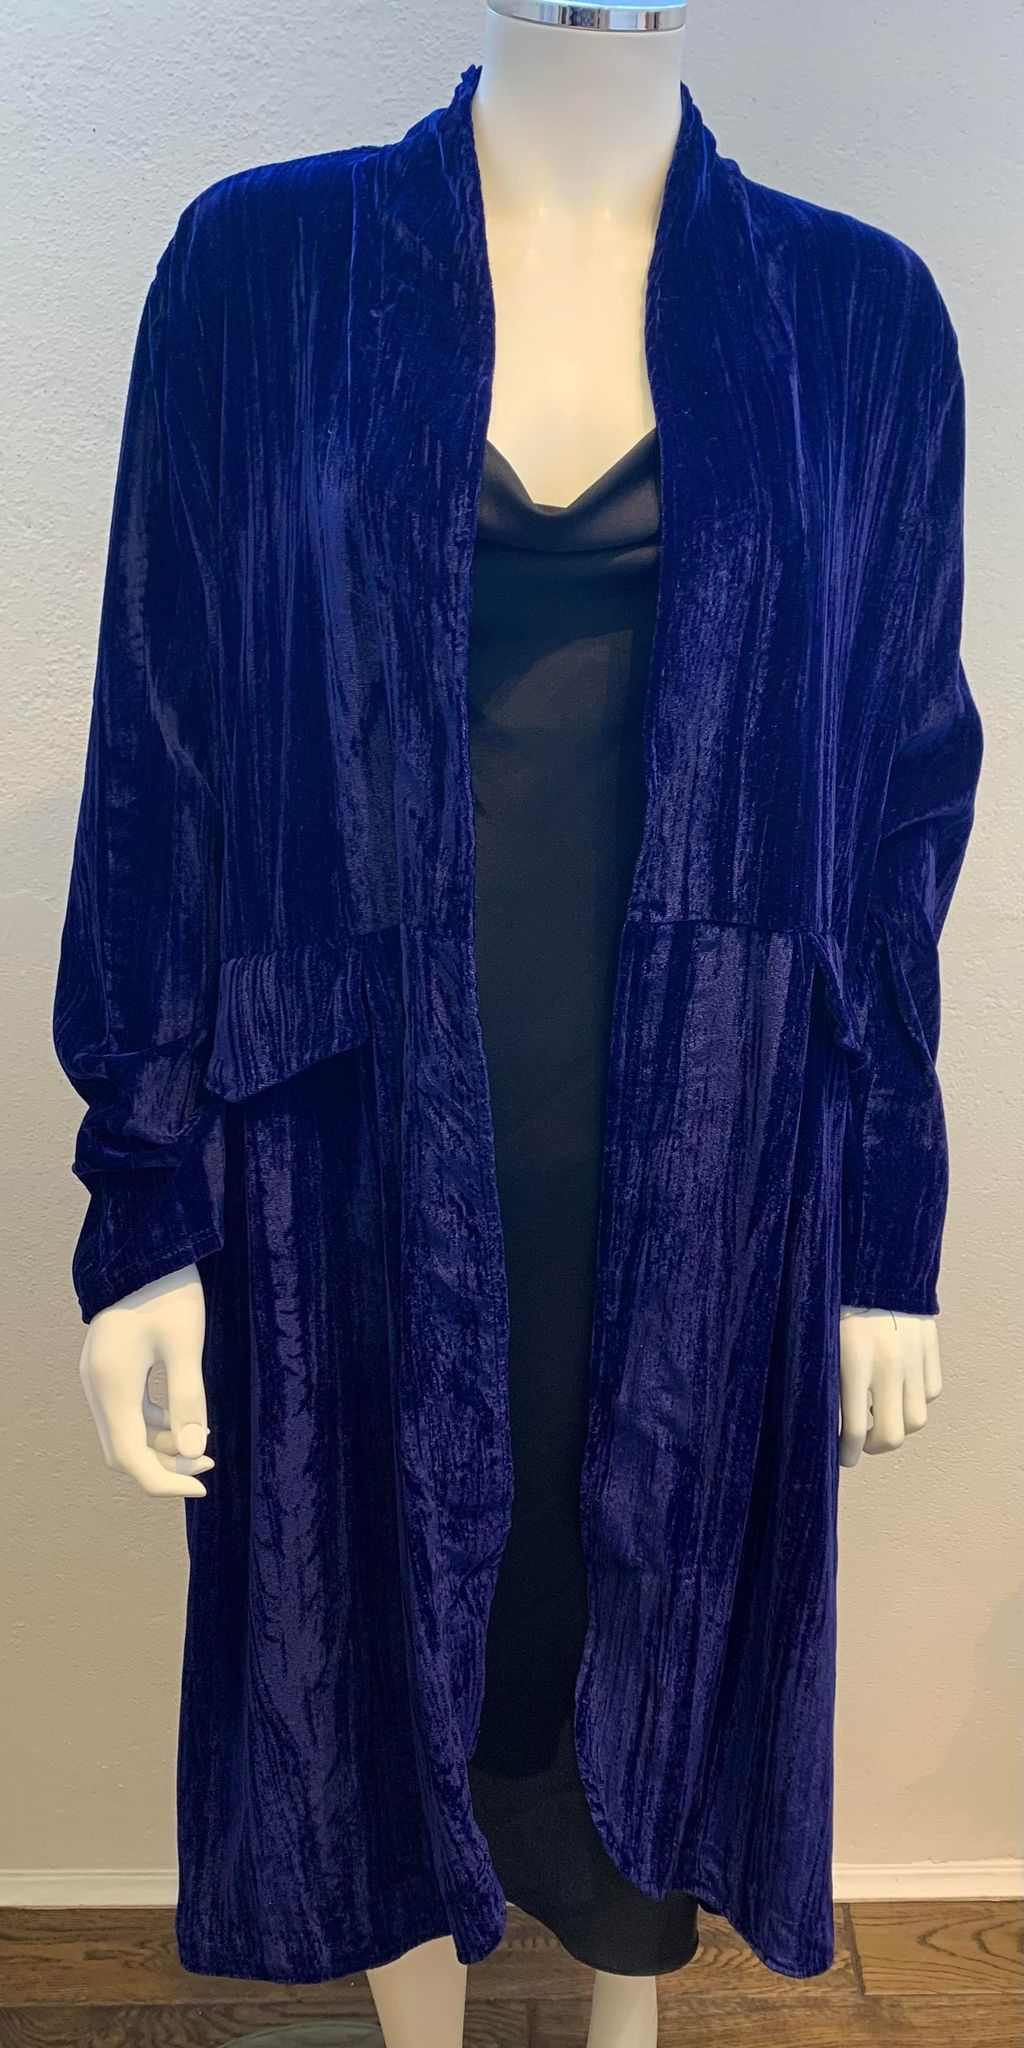 Diverse – Wendy – Velvet Jacket – Royal Blue – Elspeth Mills Clothing